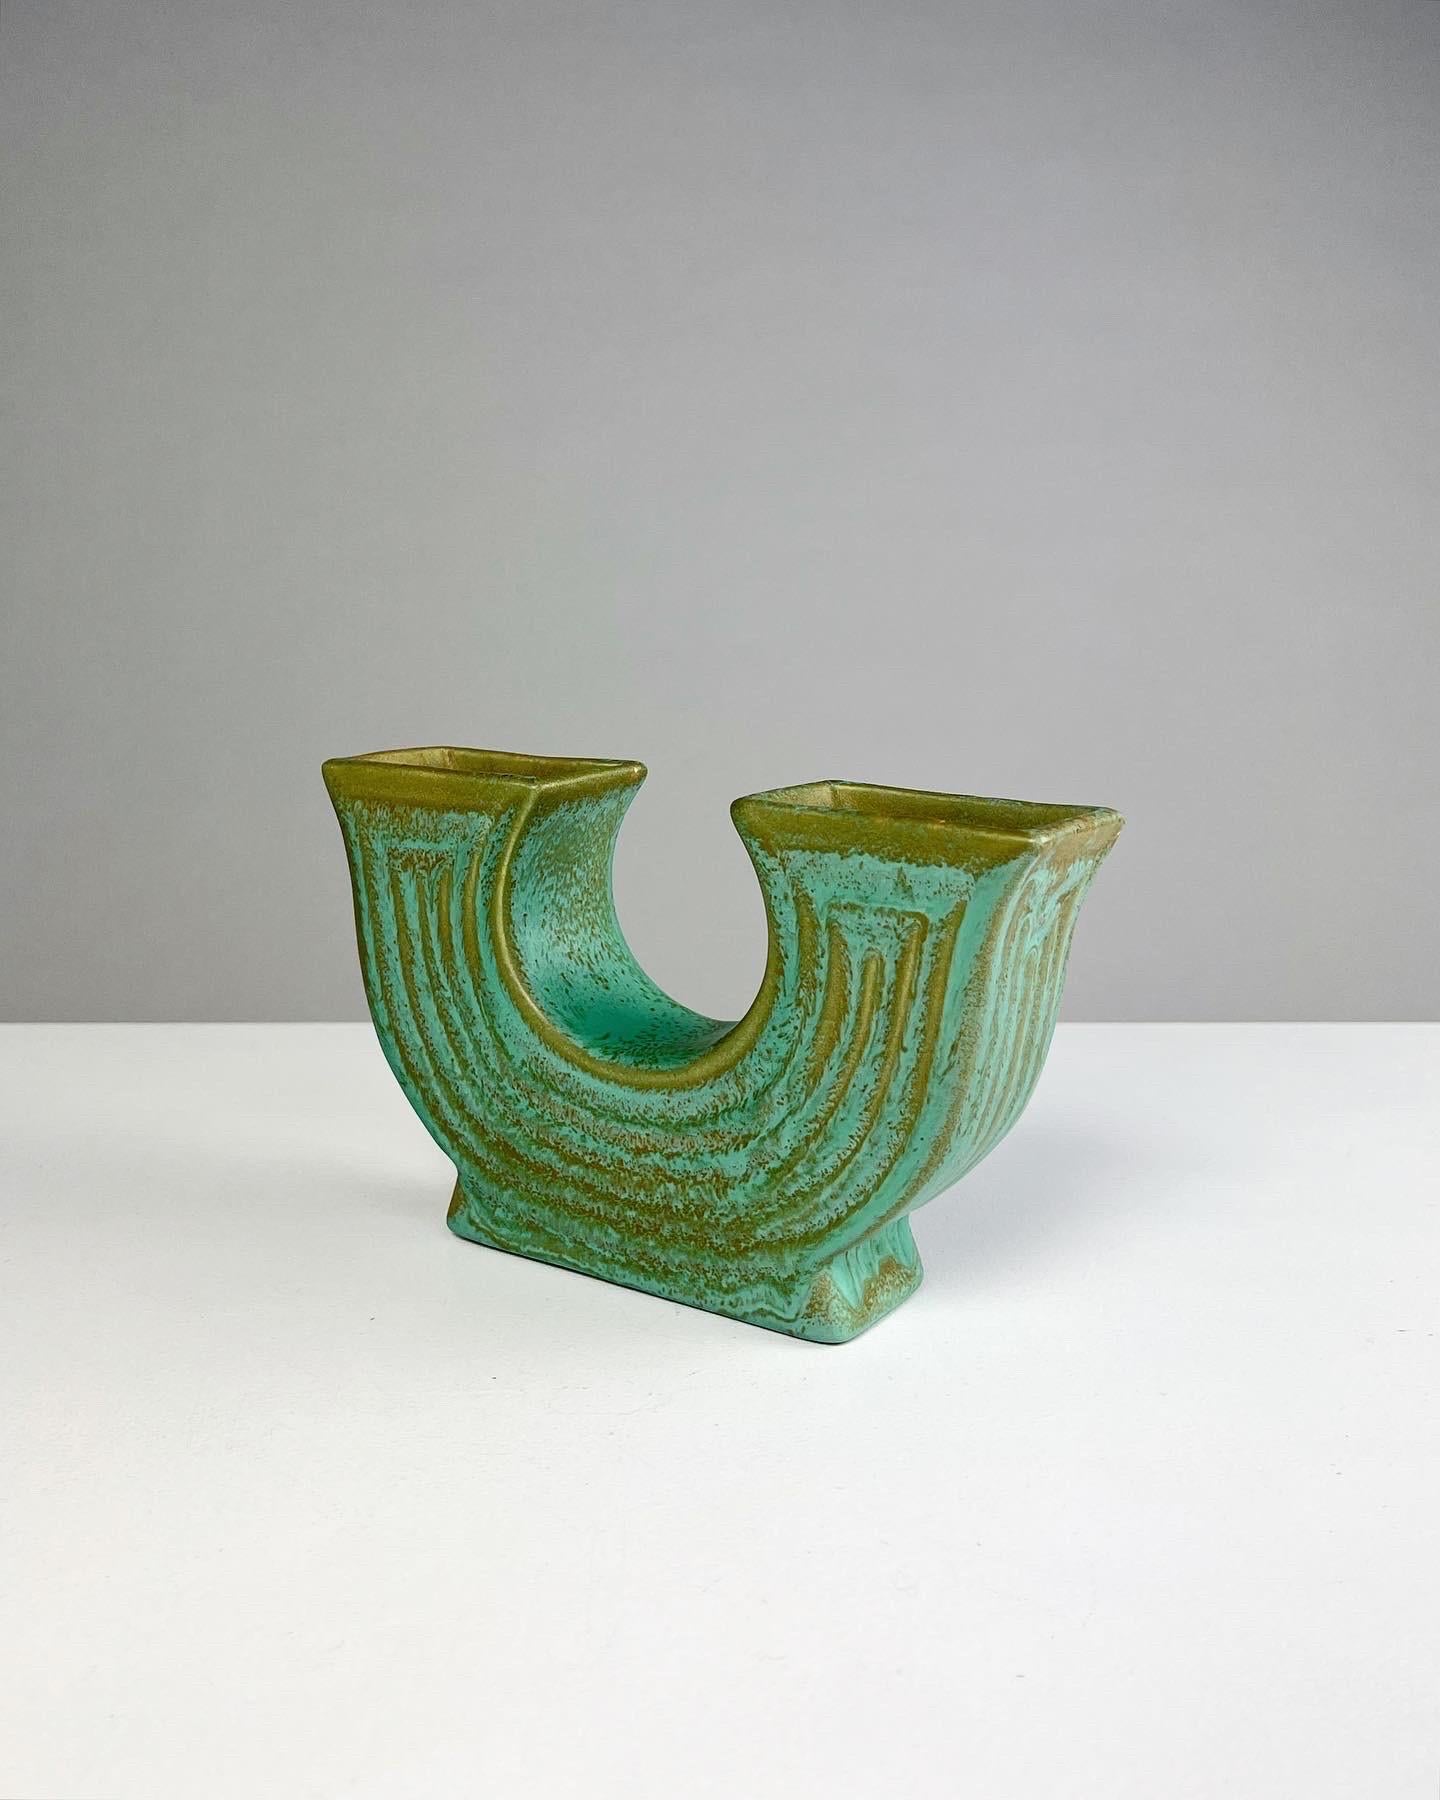 Seltene doppelseitige Steinzeugvase von Ewald Dahlskog für Bo Fajans (Bobergs Fajansfabrik), Modell Nr. D 92, 1938 entworfen und bis Anfang bis Mitte der 1940er Jahre in Schweden handgefertigt. 

Die Glasurfarbe heißt 'Smaragd', Modell Nr. D 92.